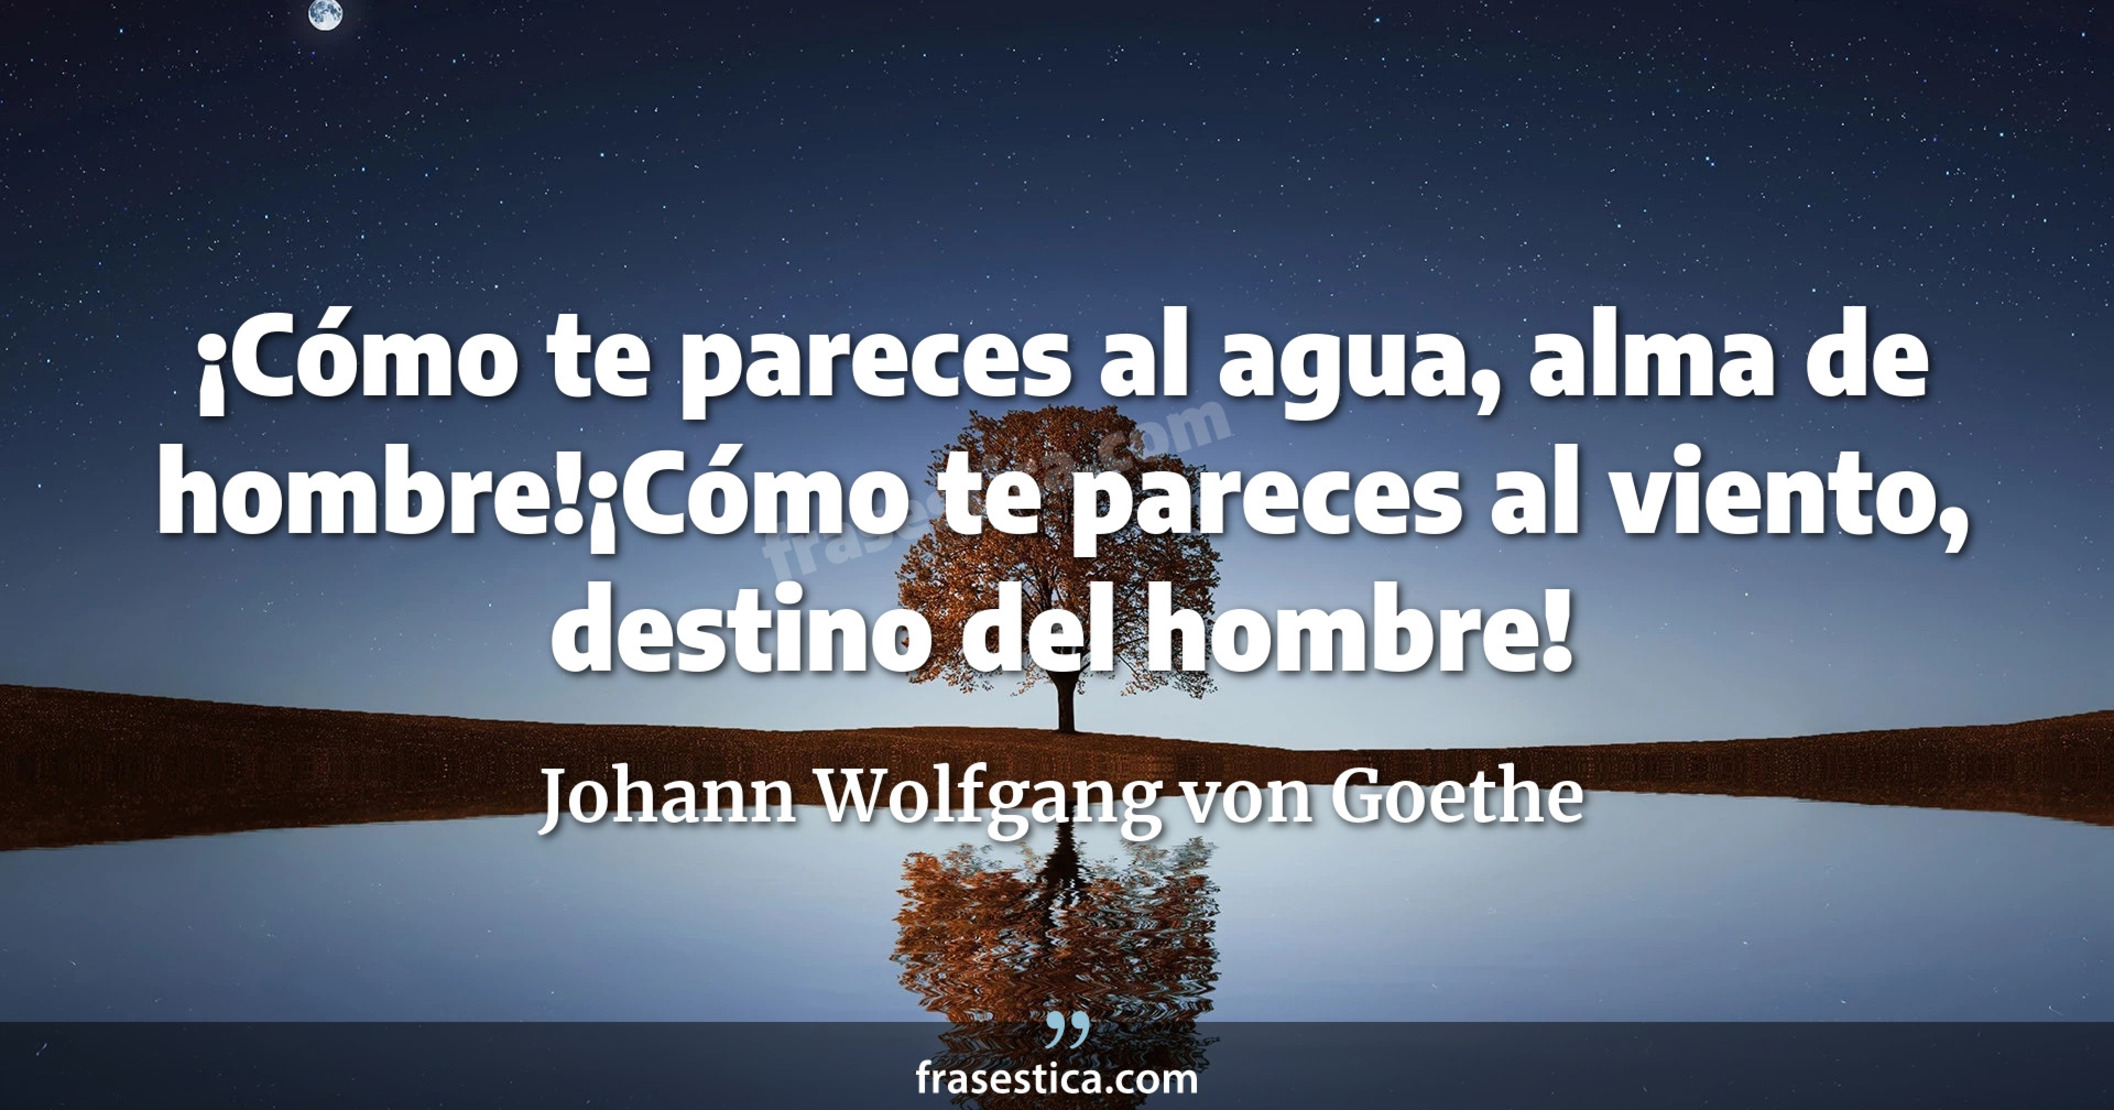 ¡Cómo te pareces al agua, alma de hombre!¡Cómo te pareces al viento, destino del hombre! - Johann Wolfgang von Goethe